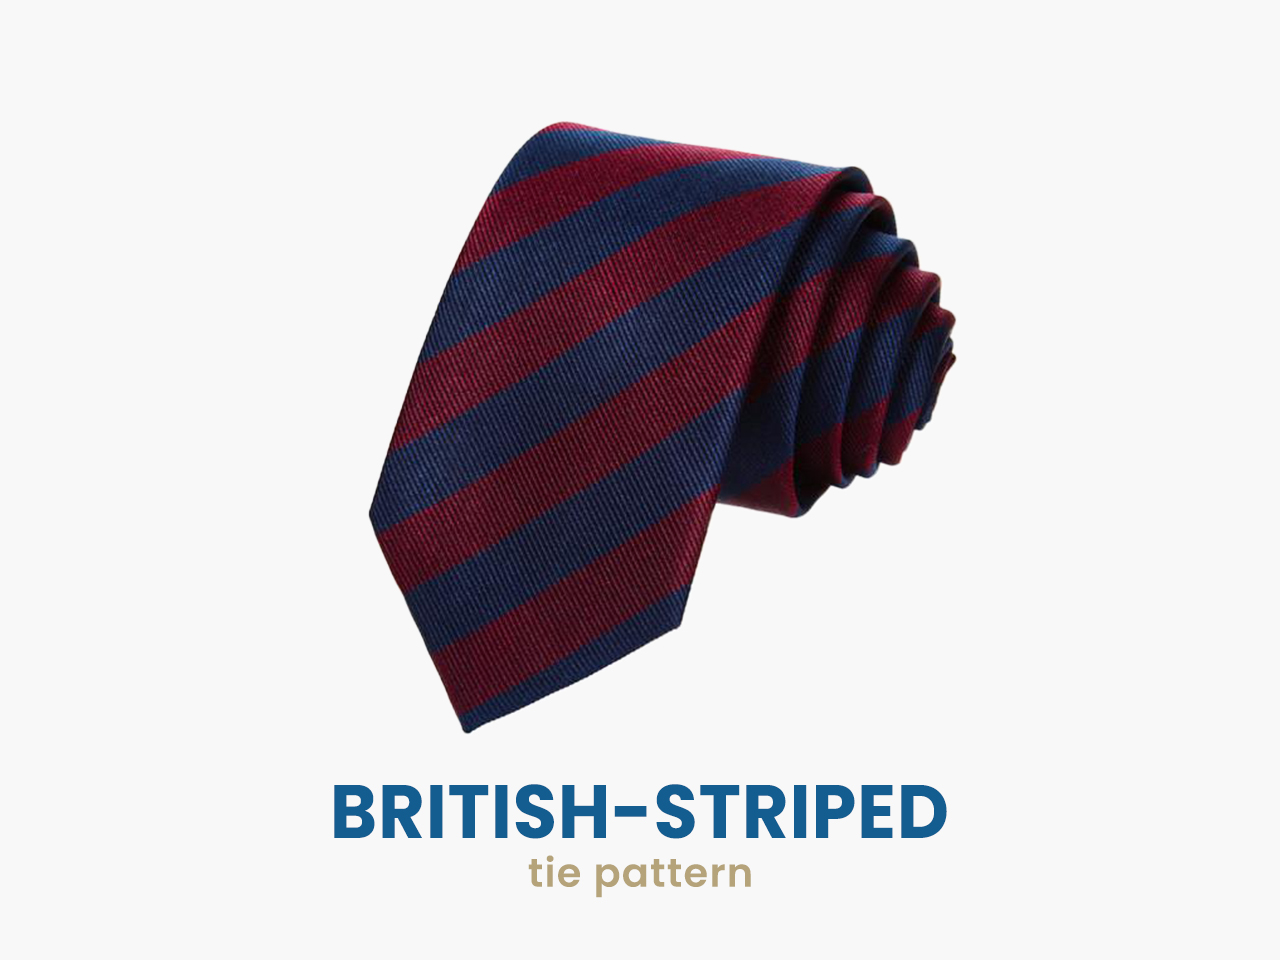 British-striped tie pattern